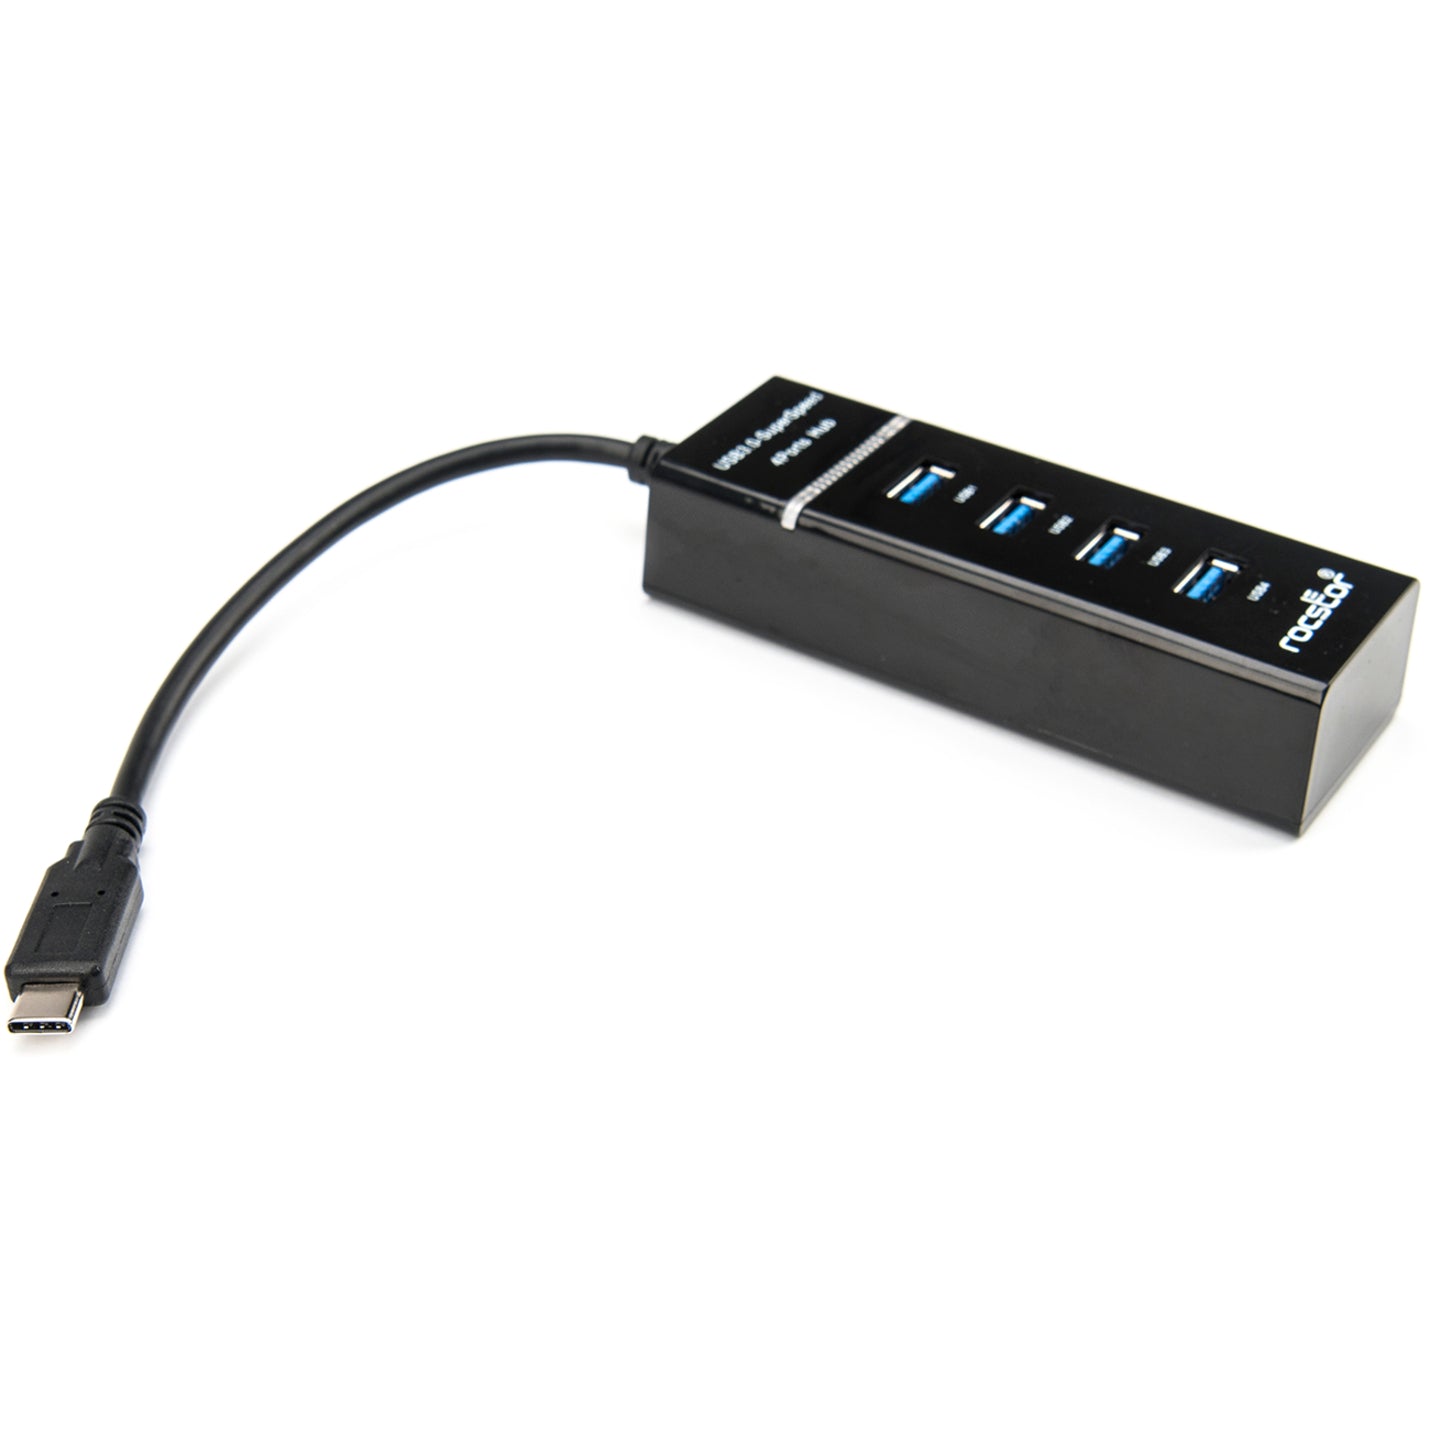 Rocstor Y10A228-B1 Premium Slim Portable 4 Port USB C Hub, 4 USB 3.0 Ports, Bus Powered